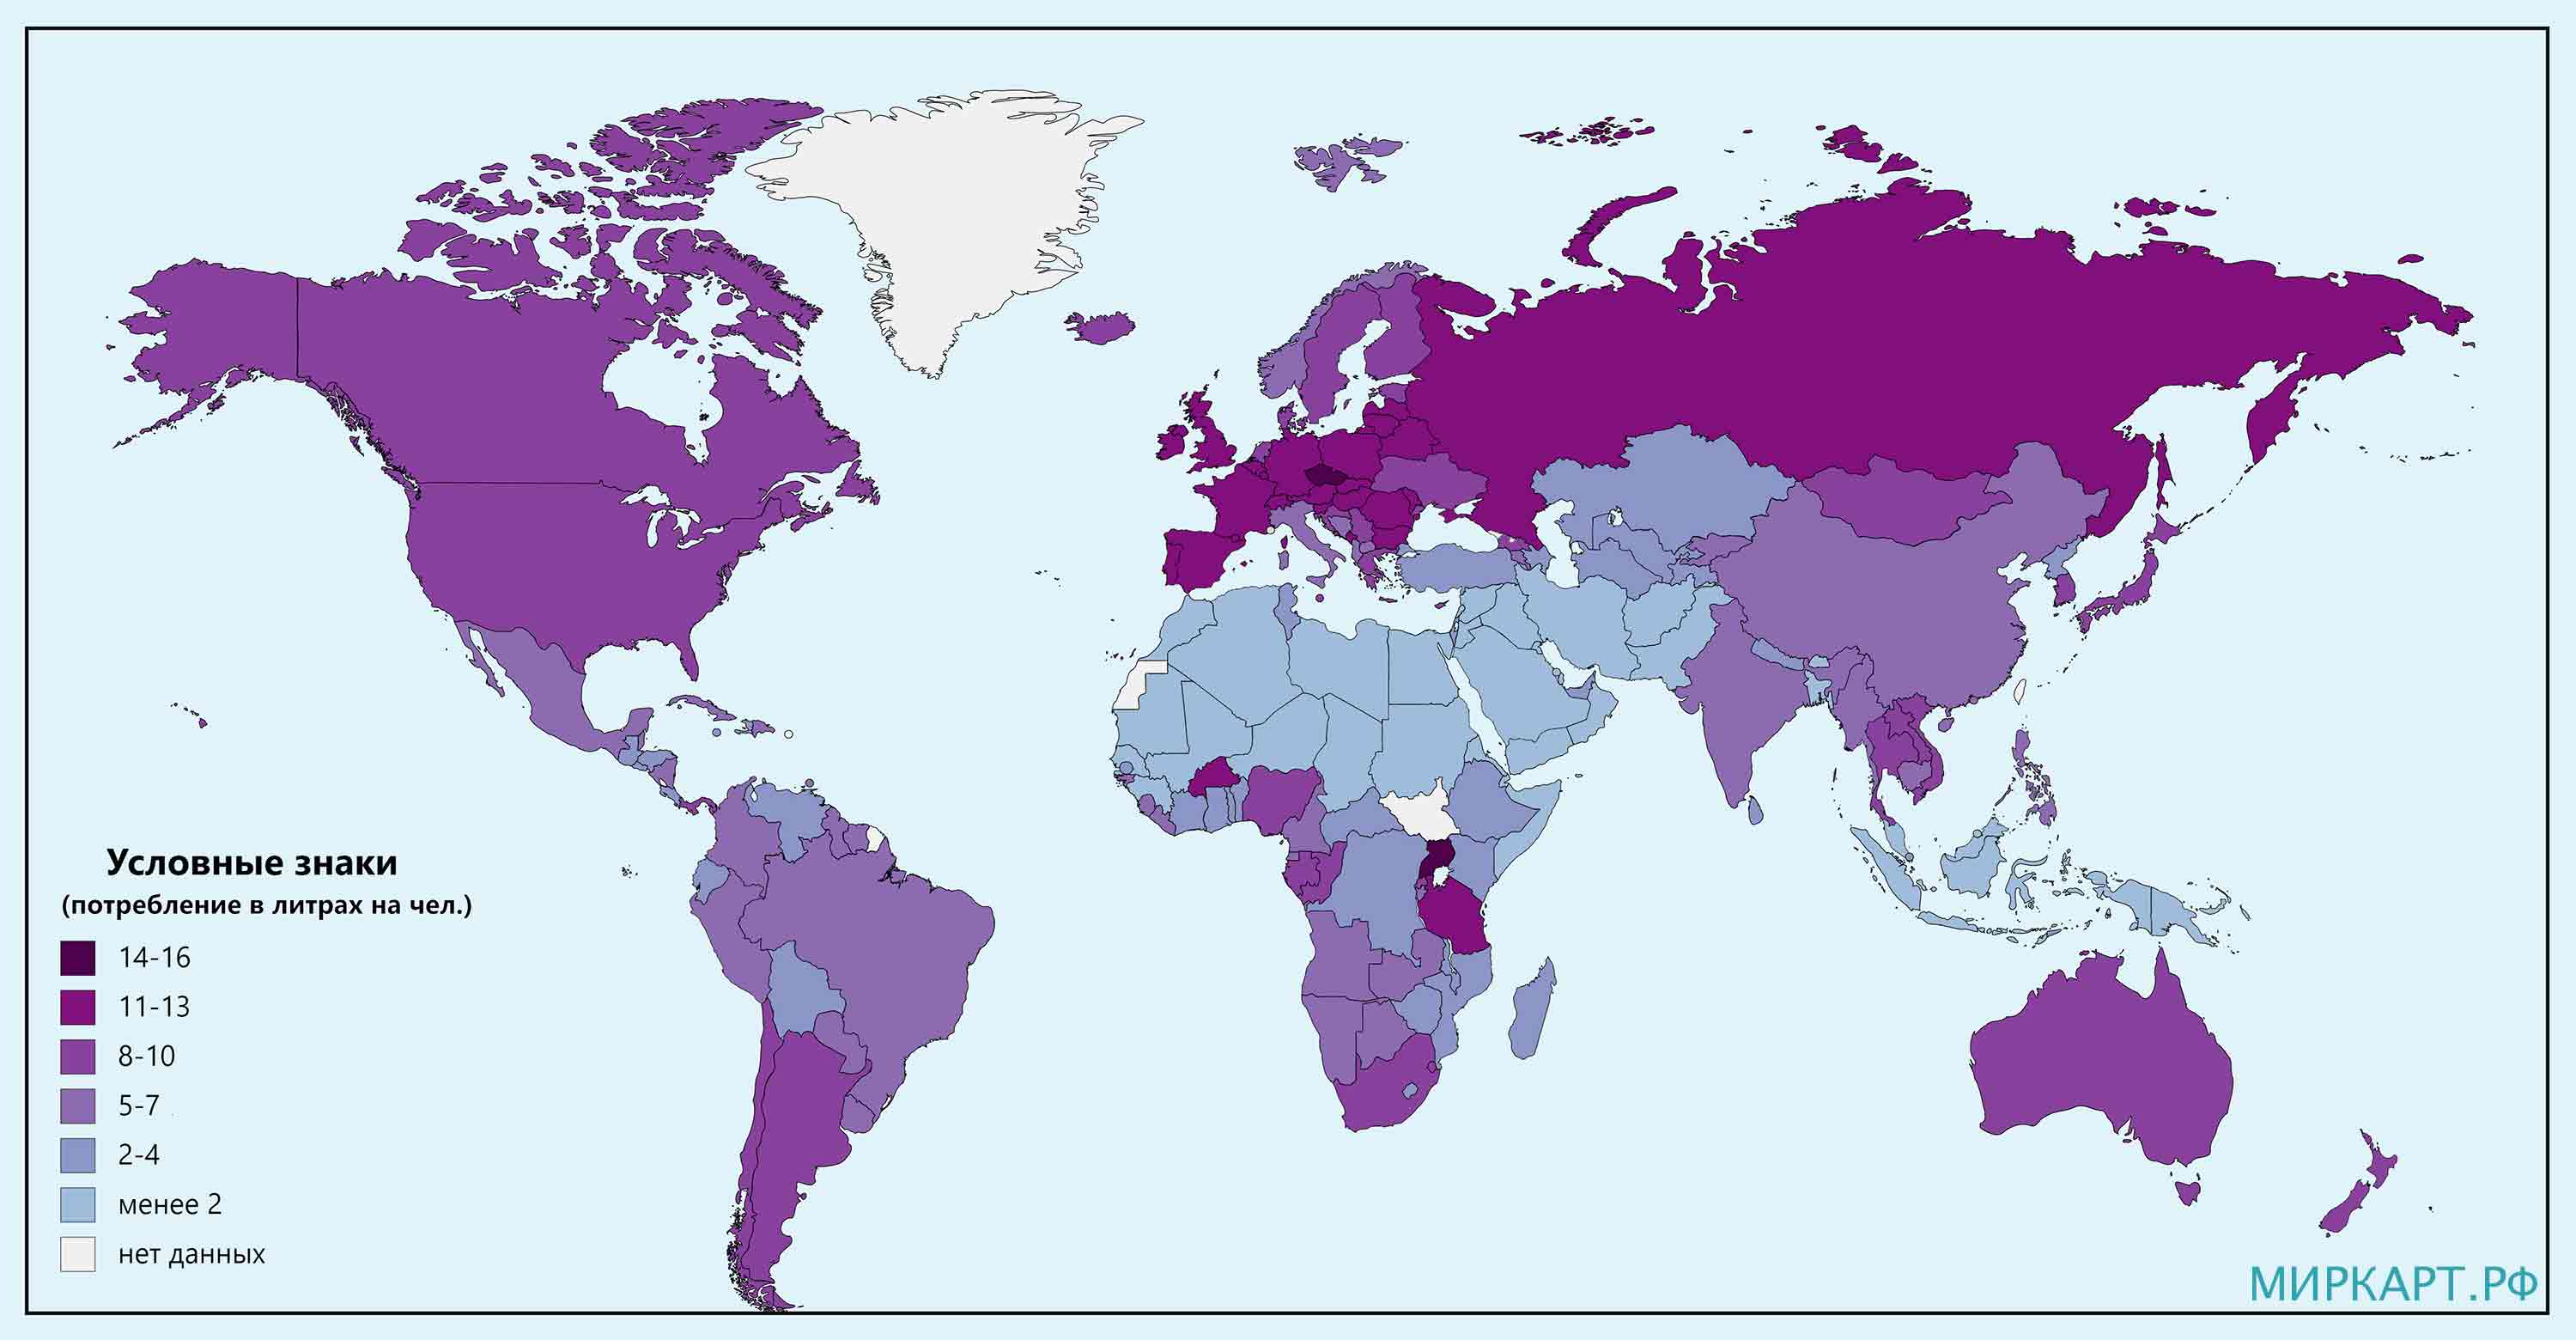 Карта потребления алкоголя в мире